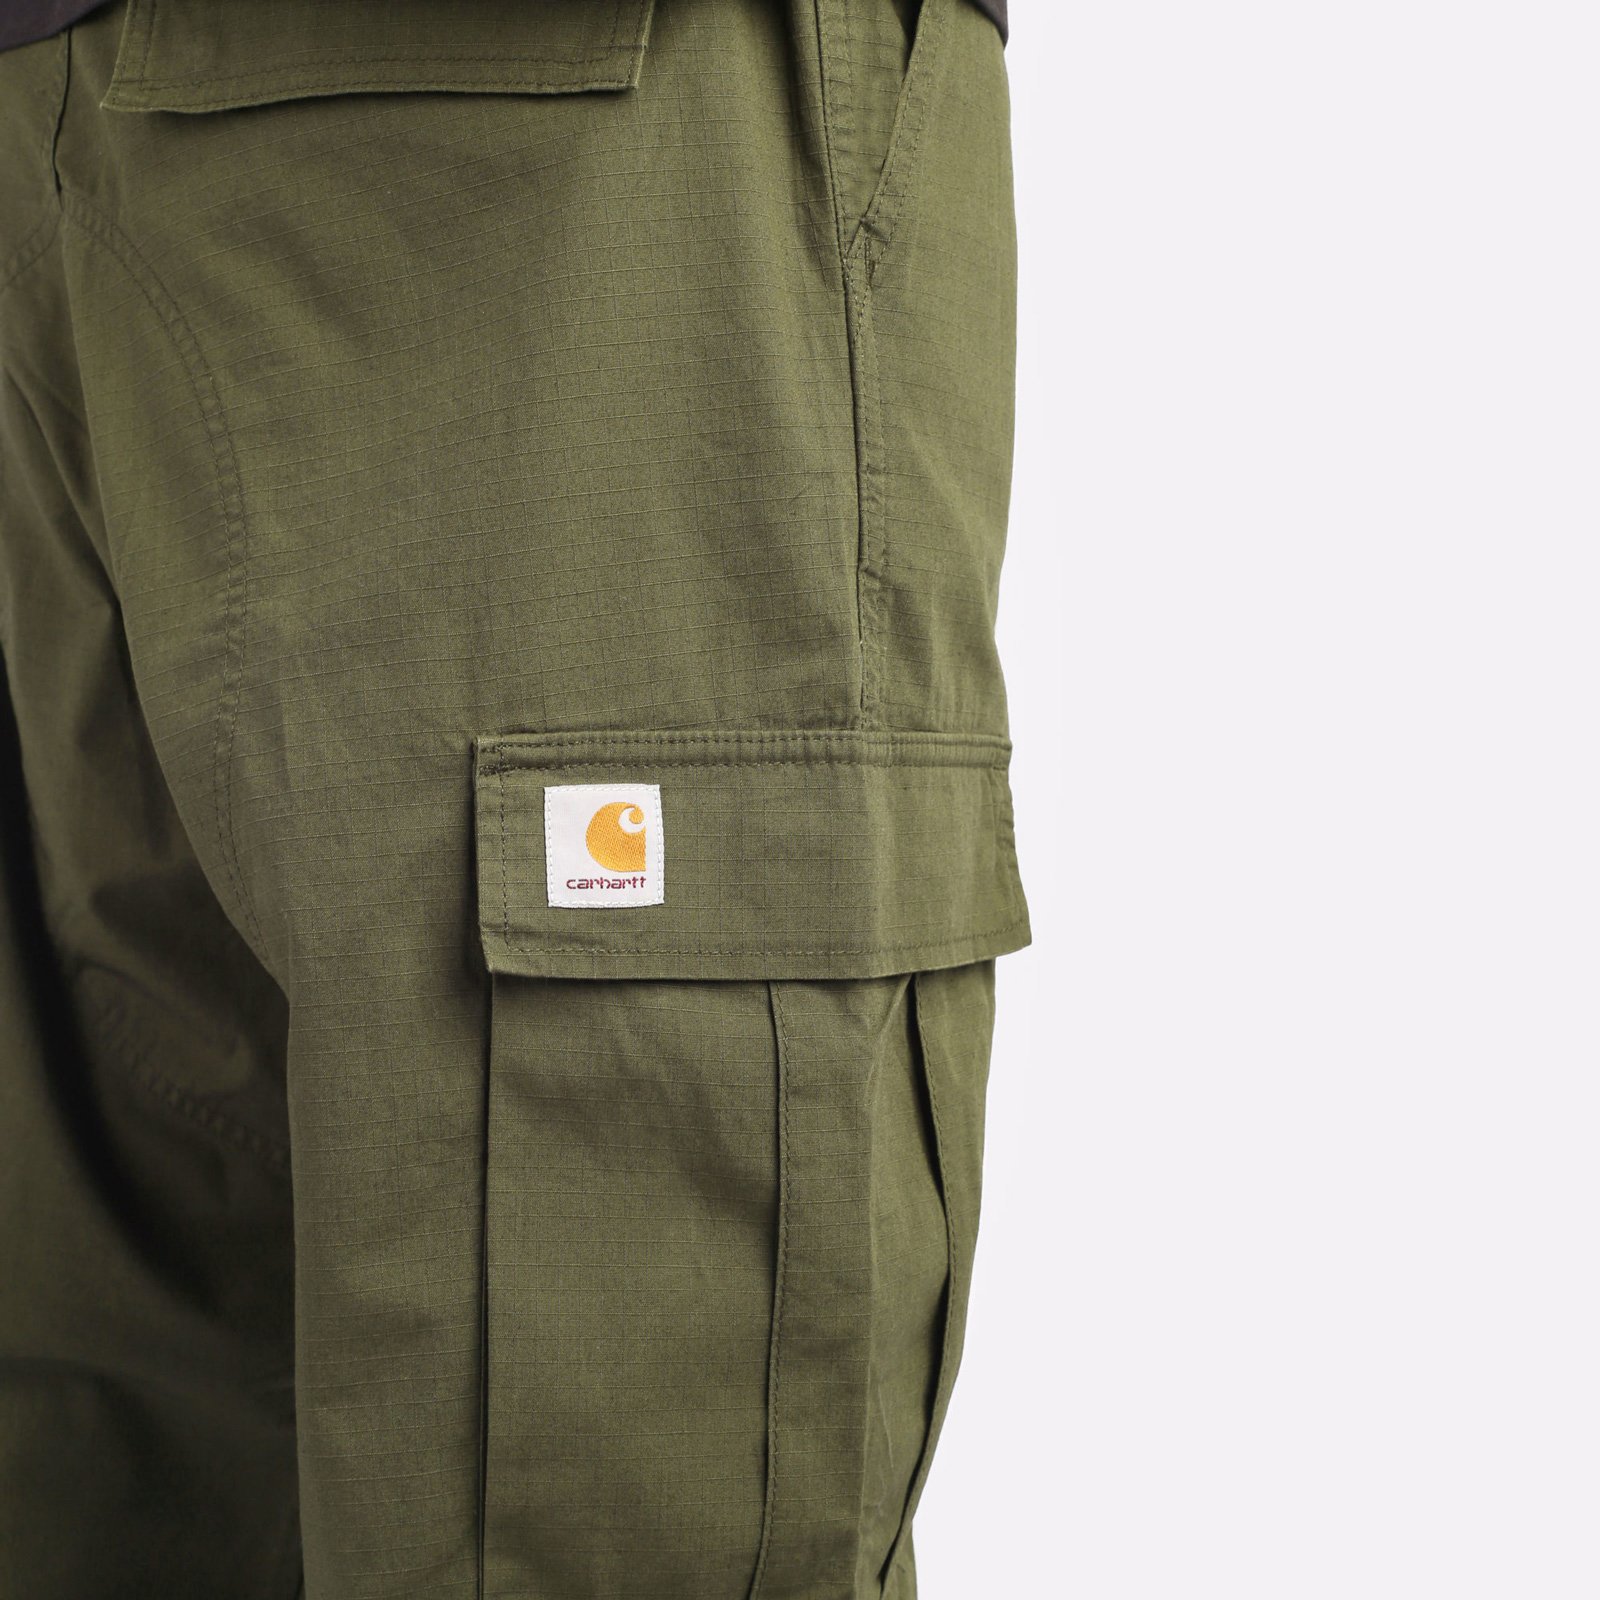 мужские брюки Carhartt WIP Regular Cargo Pant  (I032467-cypress)  - цена, описание, фото 5